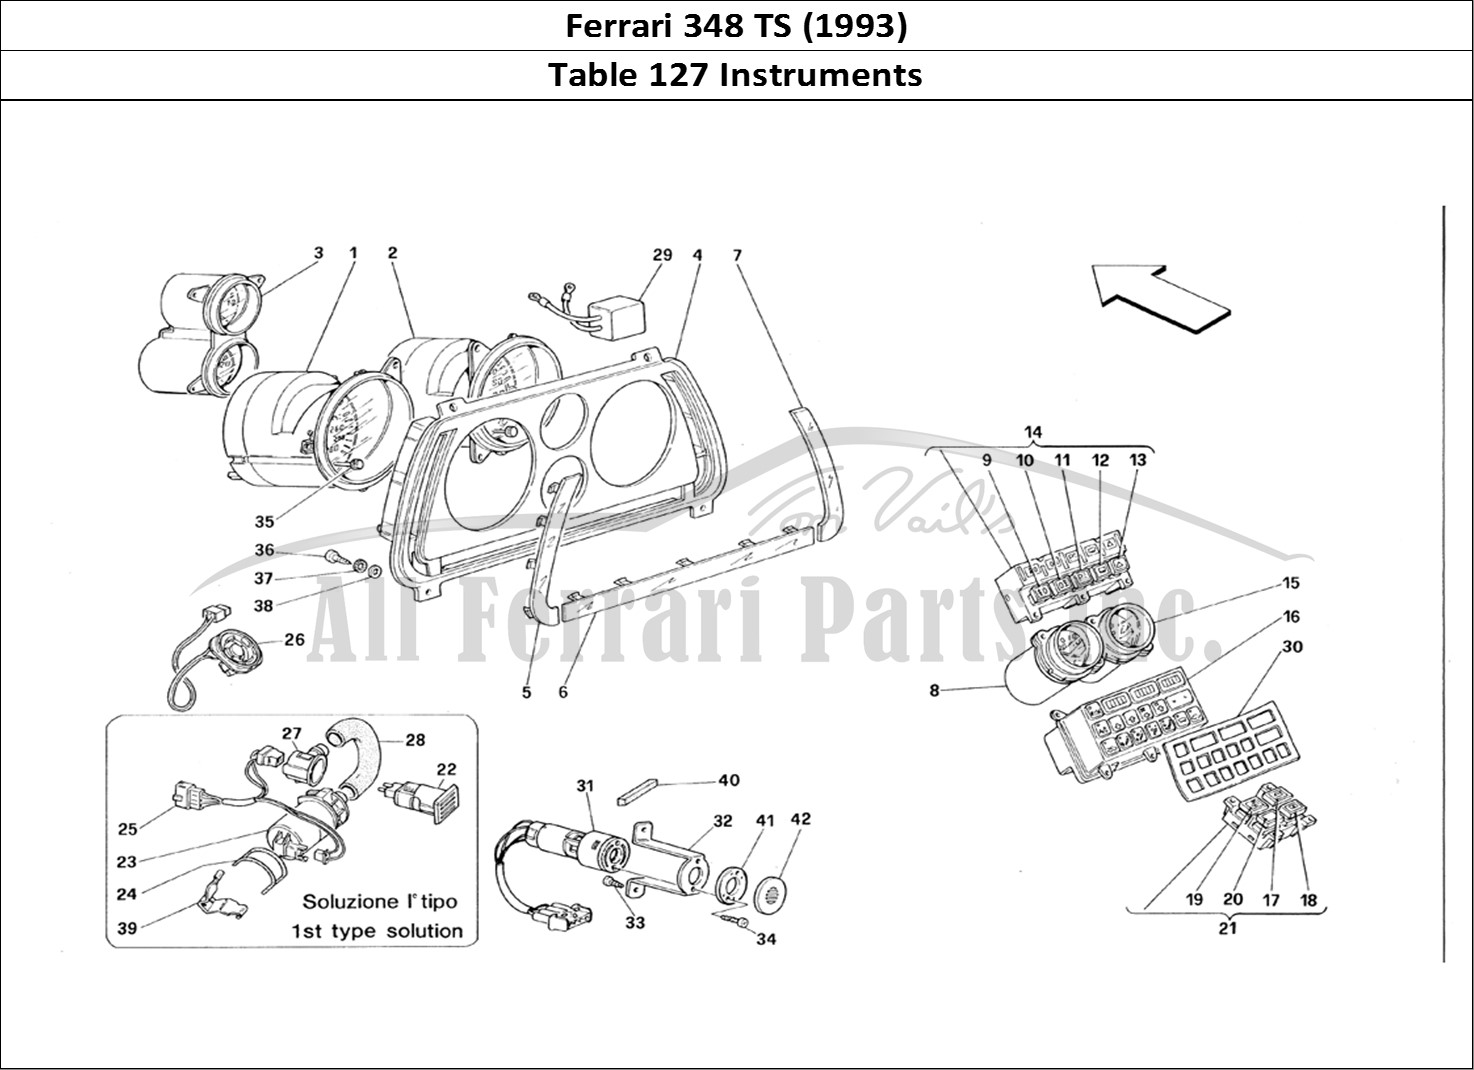 Ferrari Parts Ferrari 348 TB (1993) Page 127 InstrumenTS